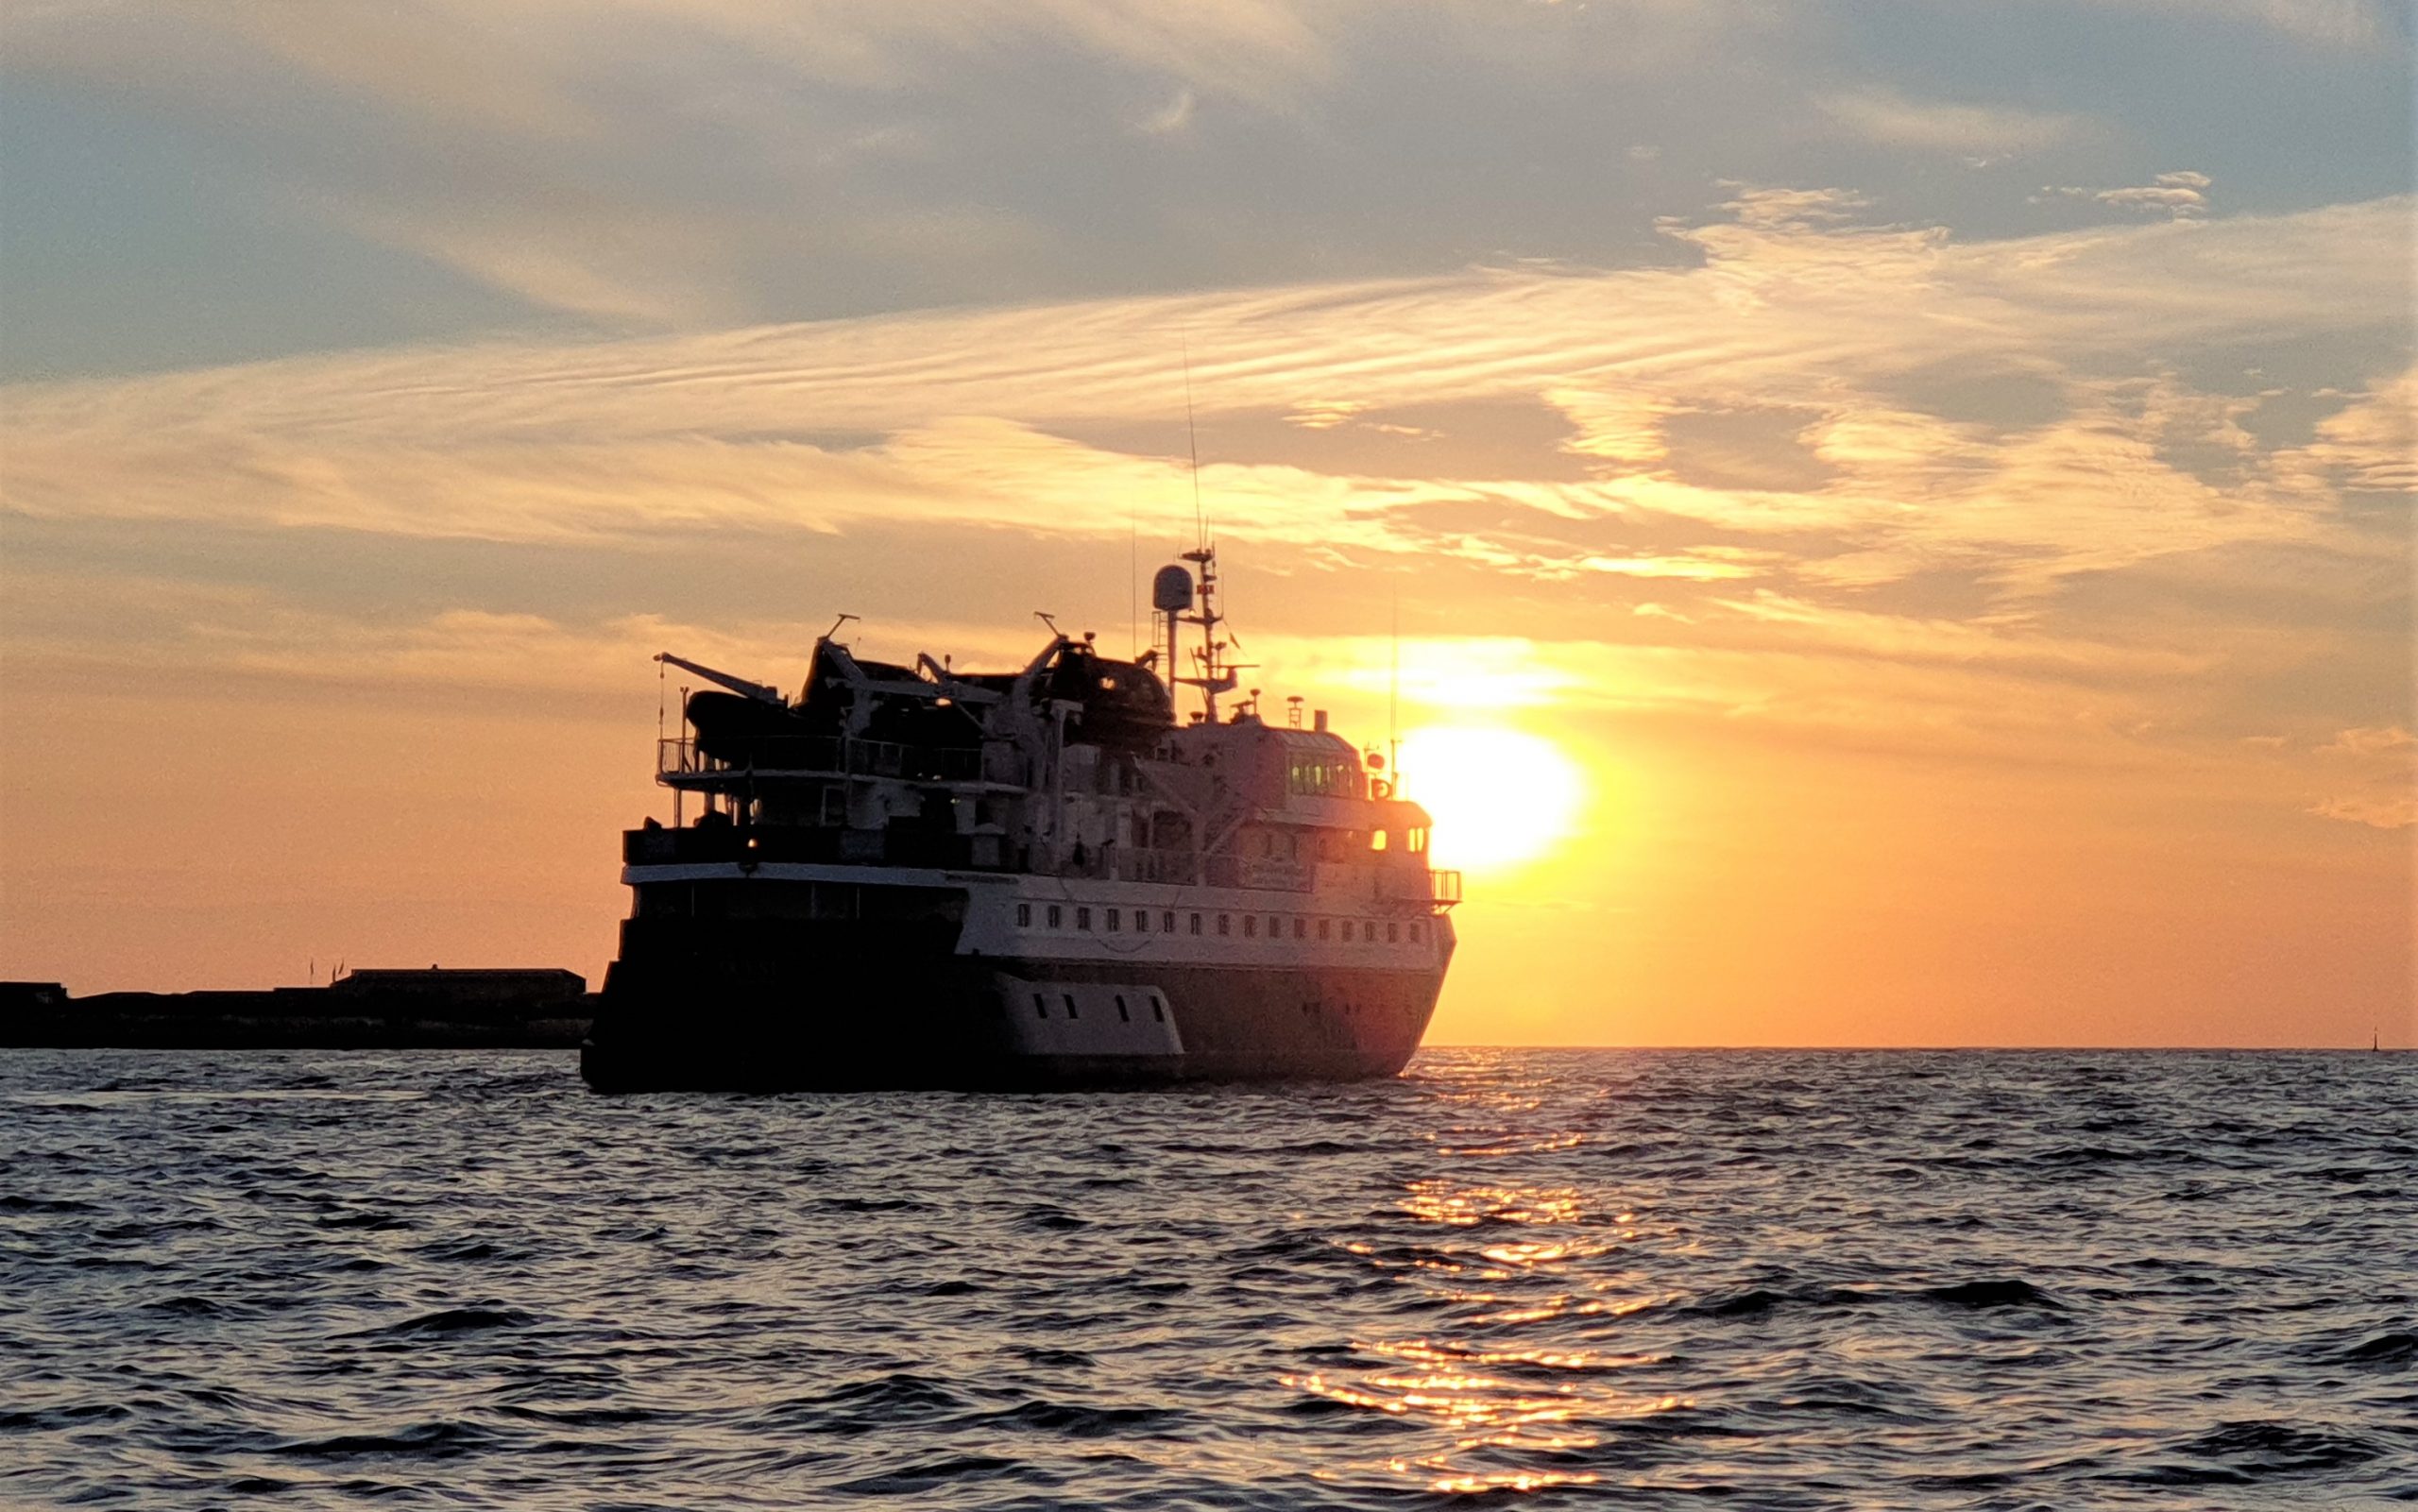 Reportage über eine Expedition mit dem Kreuzfahrtschiff Quest durch das Wattenmeer ab/bis Hamburg nach Helgoland, Sylt, Amrum & den Halligen